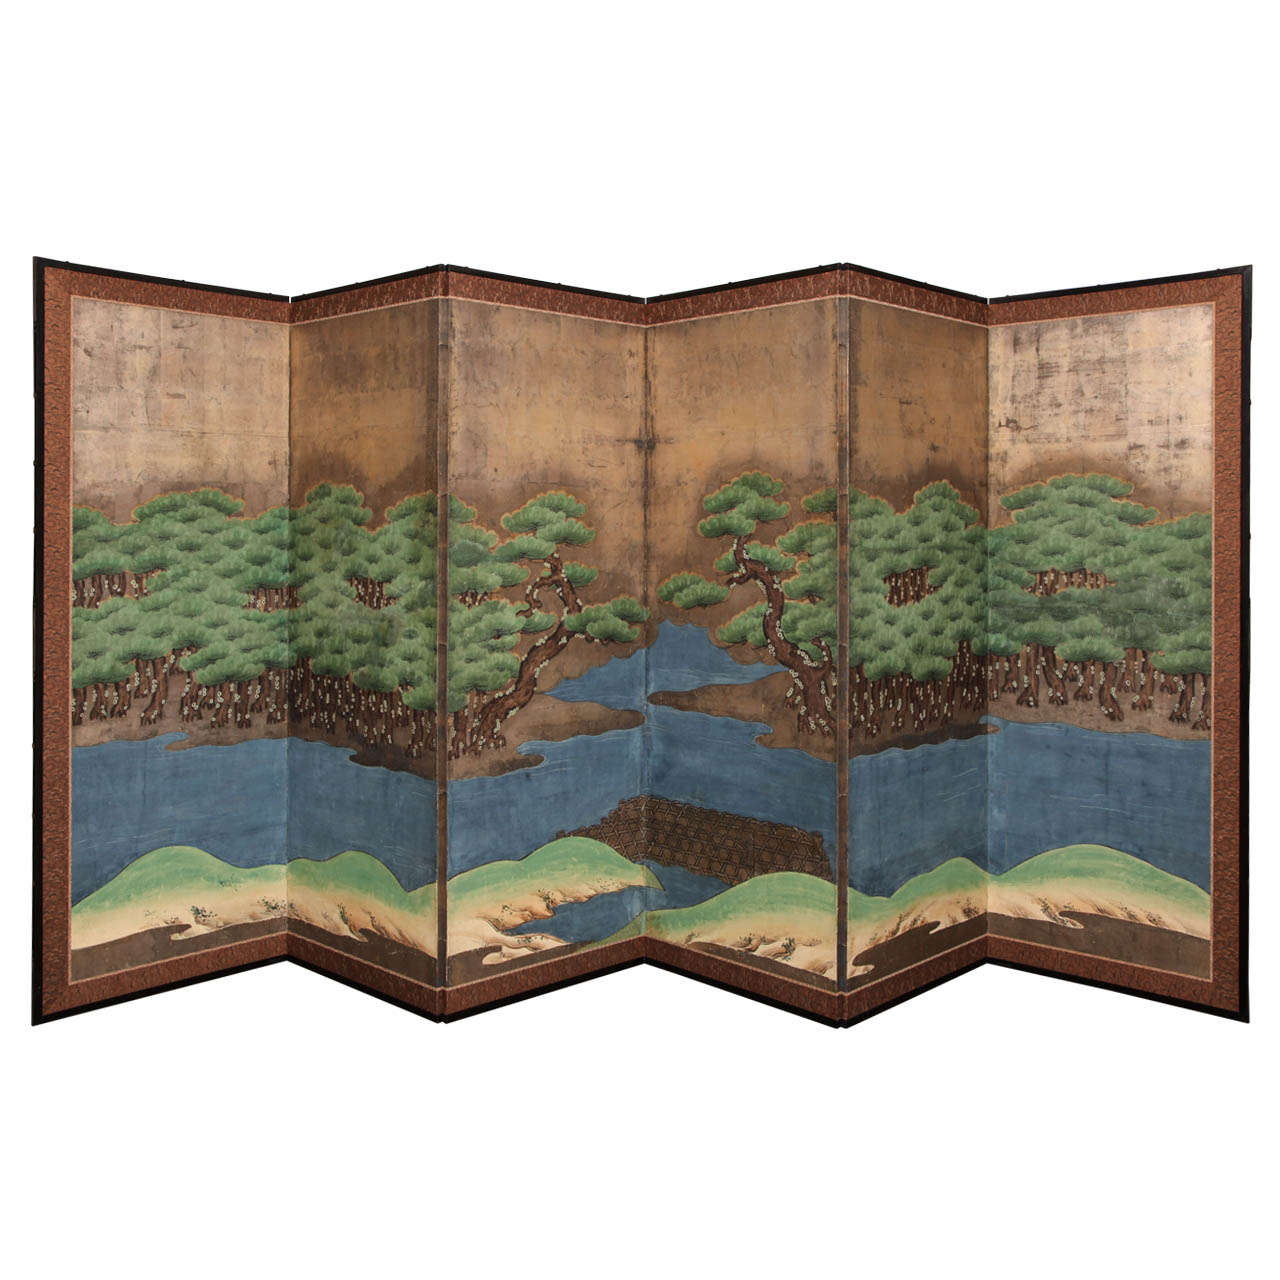 Edo Period (1603-1868) Hammamatsu Japanese Six-Fold Standing Screen